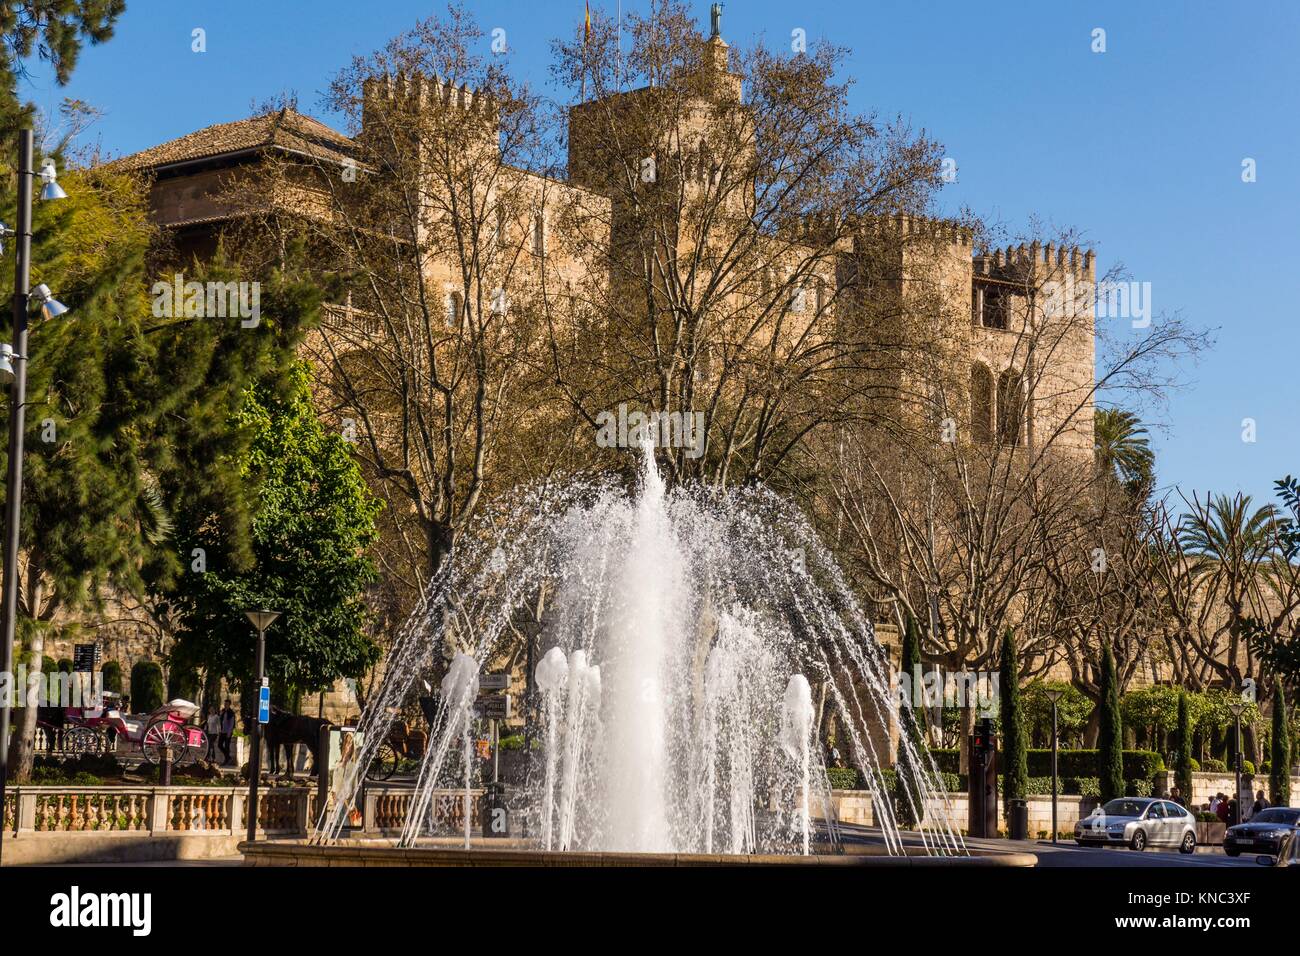 Plaza de la Reina y el Palacio Real de la Almudaina, Palma, Mallorca, Islas Baleares, España Foto de stock